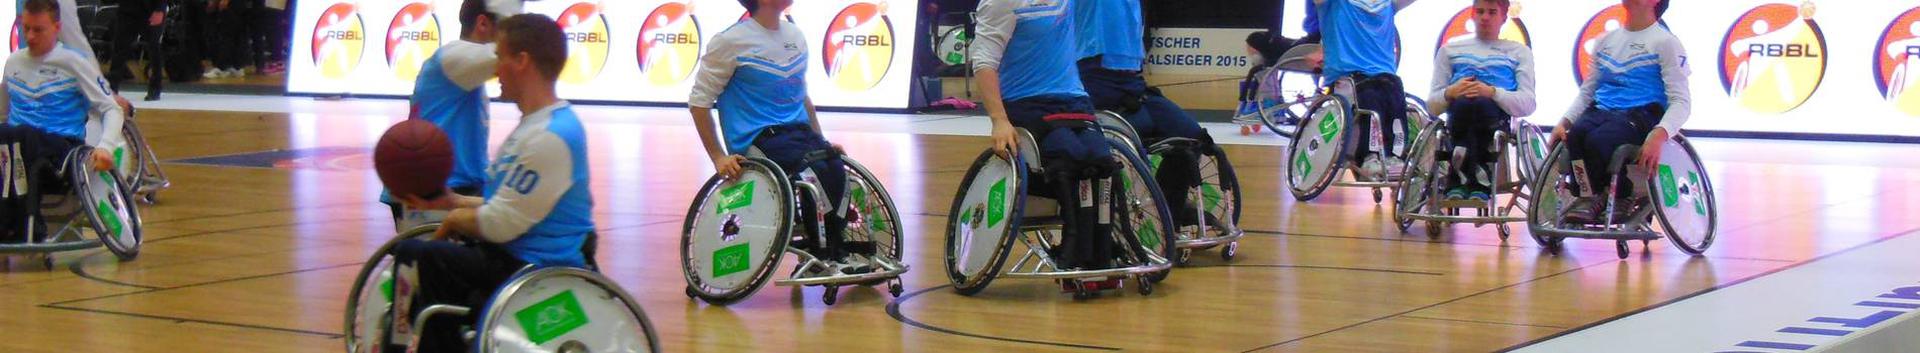 Eesti Ratastoolikorvpalli Klubi on mittetulundusühing mille eesmärk on tutvustada ja populariseerida ratastoolikorvpalli ning puuetega inimeste sporti üldiselt.